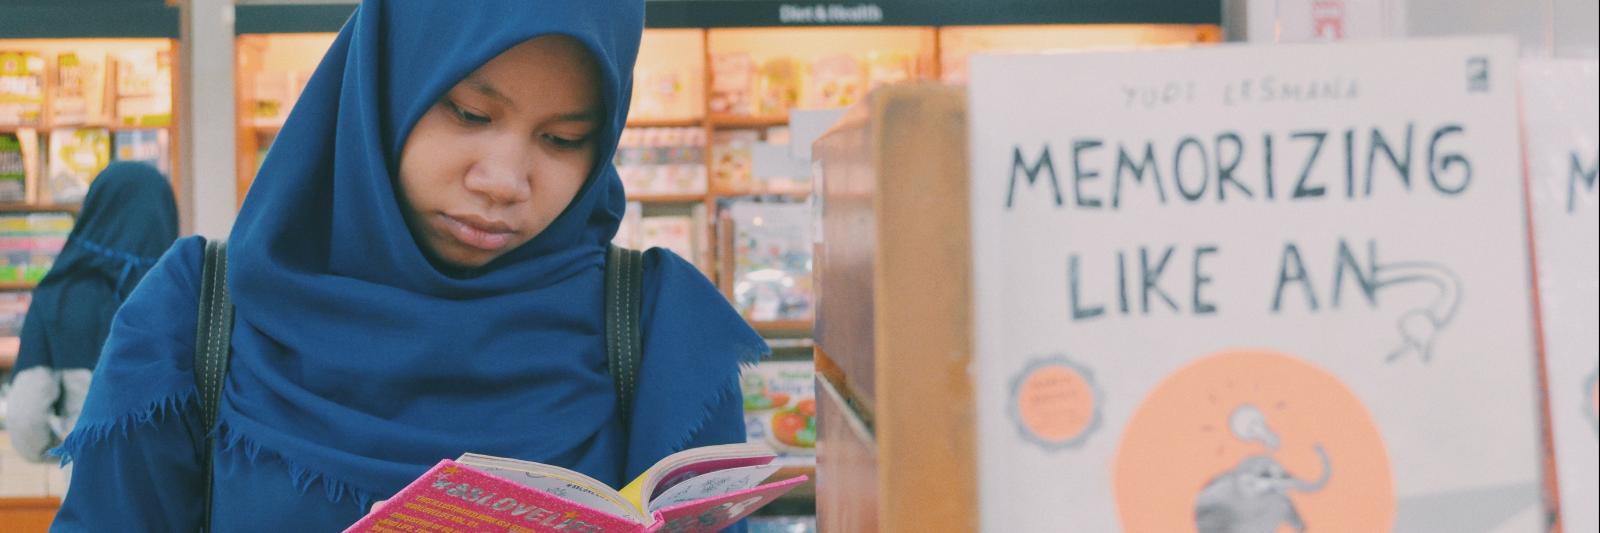 Una ragazza legge un libro davanti ad una libreria